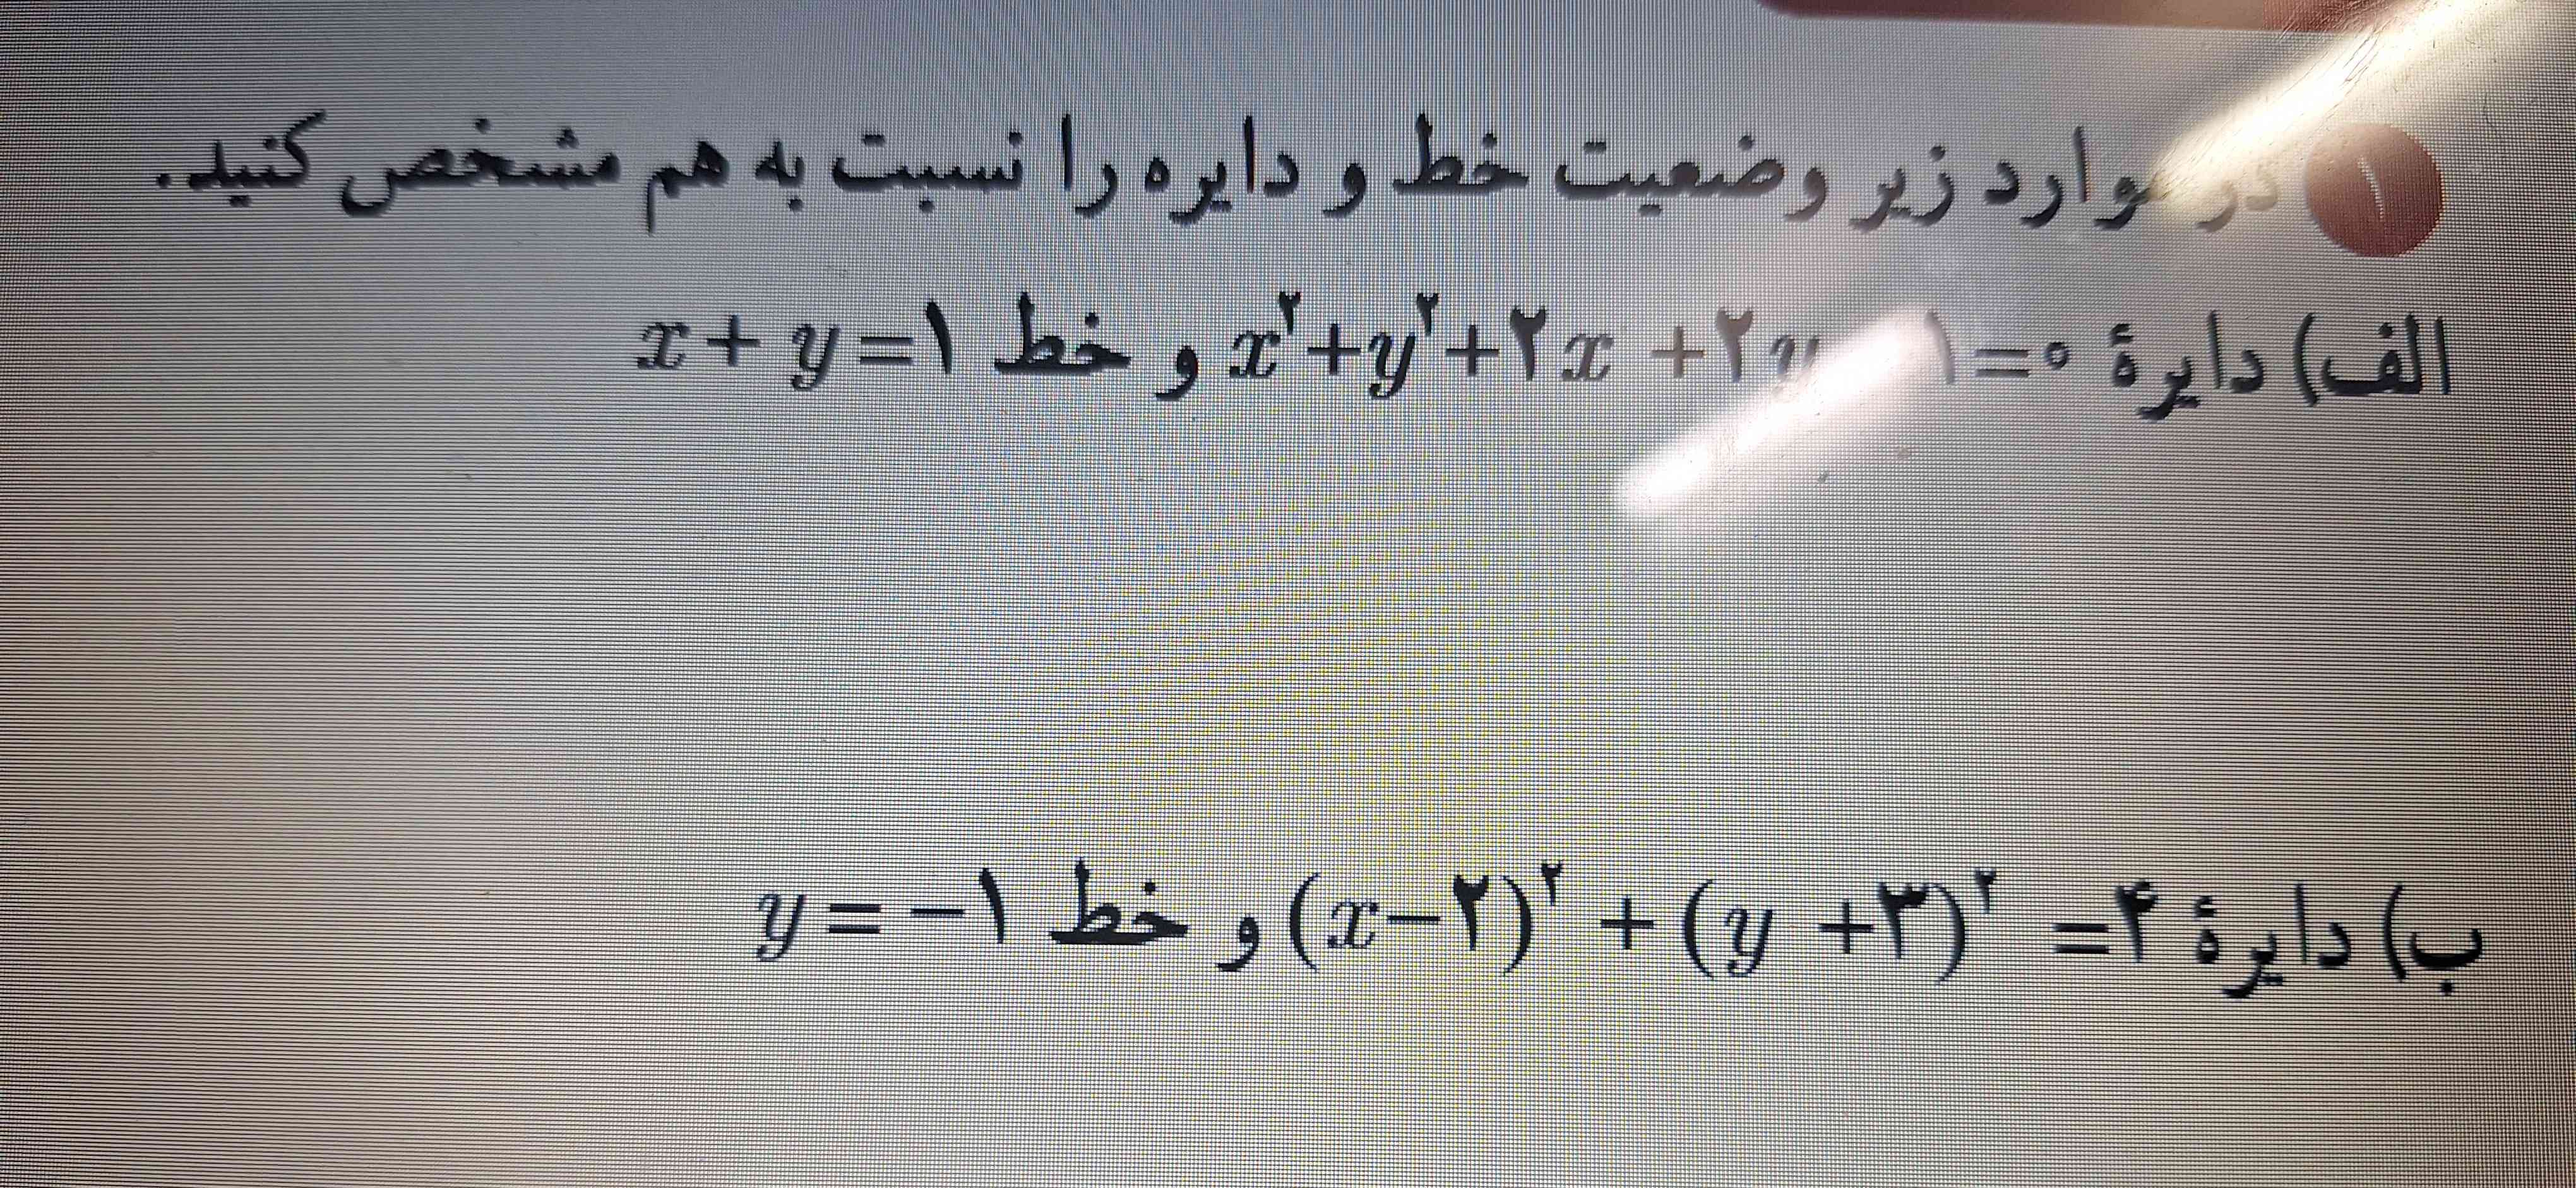 قسمت ب . مگ aوb صفر نمیشه تو معادله ؟؟؟
مگه نباید جوابش بشه صفر و کوچیکتر از r . طبق همون فرمول فاصله نقطه از خط 